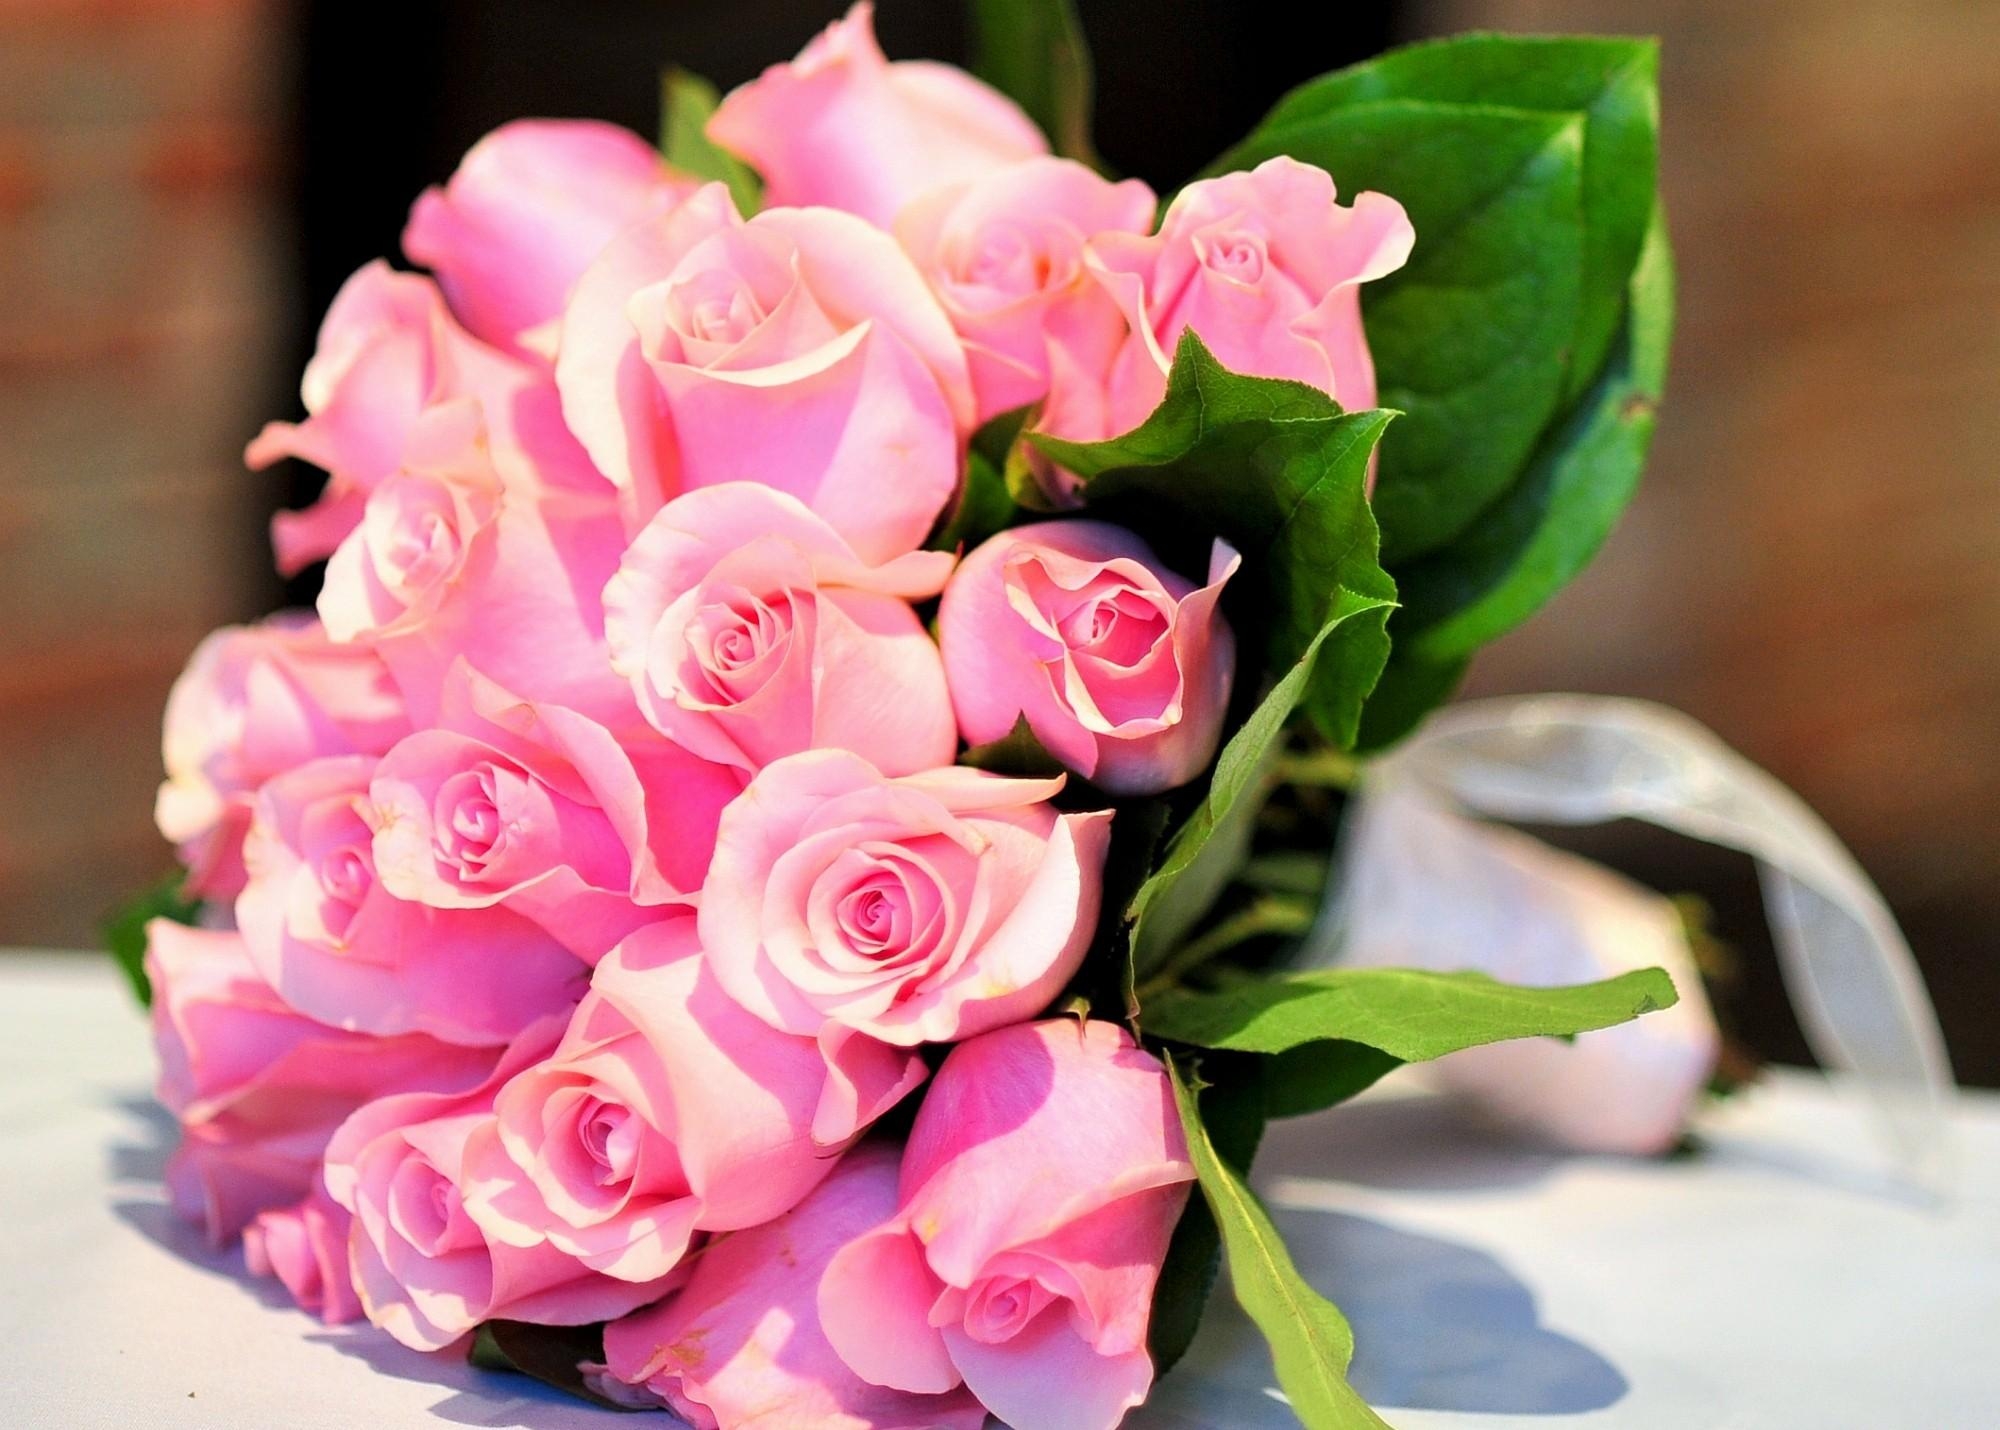 桌上放着一束粉红色的玫瑰花